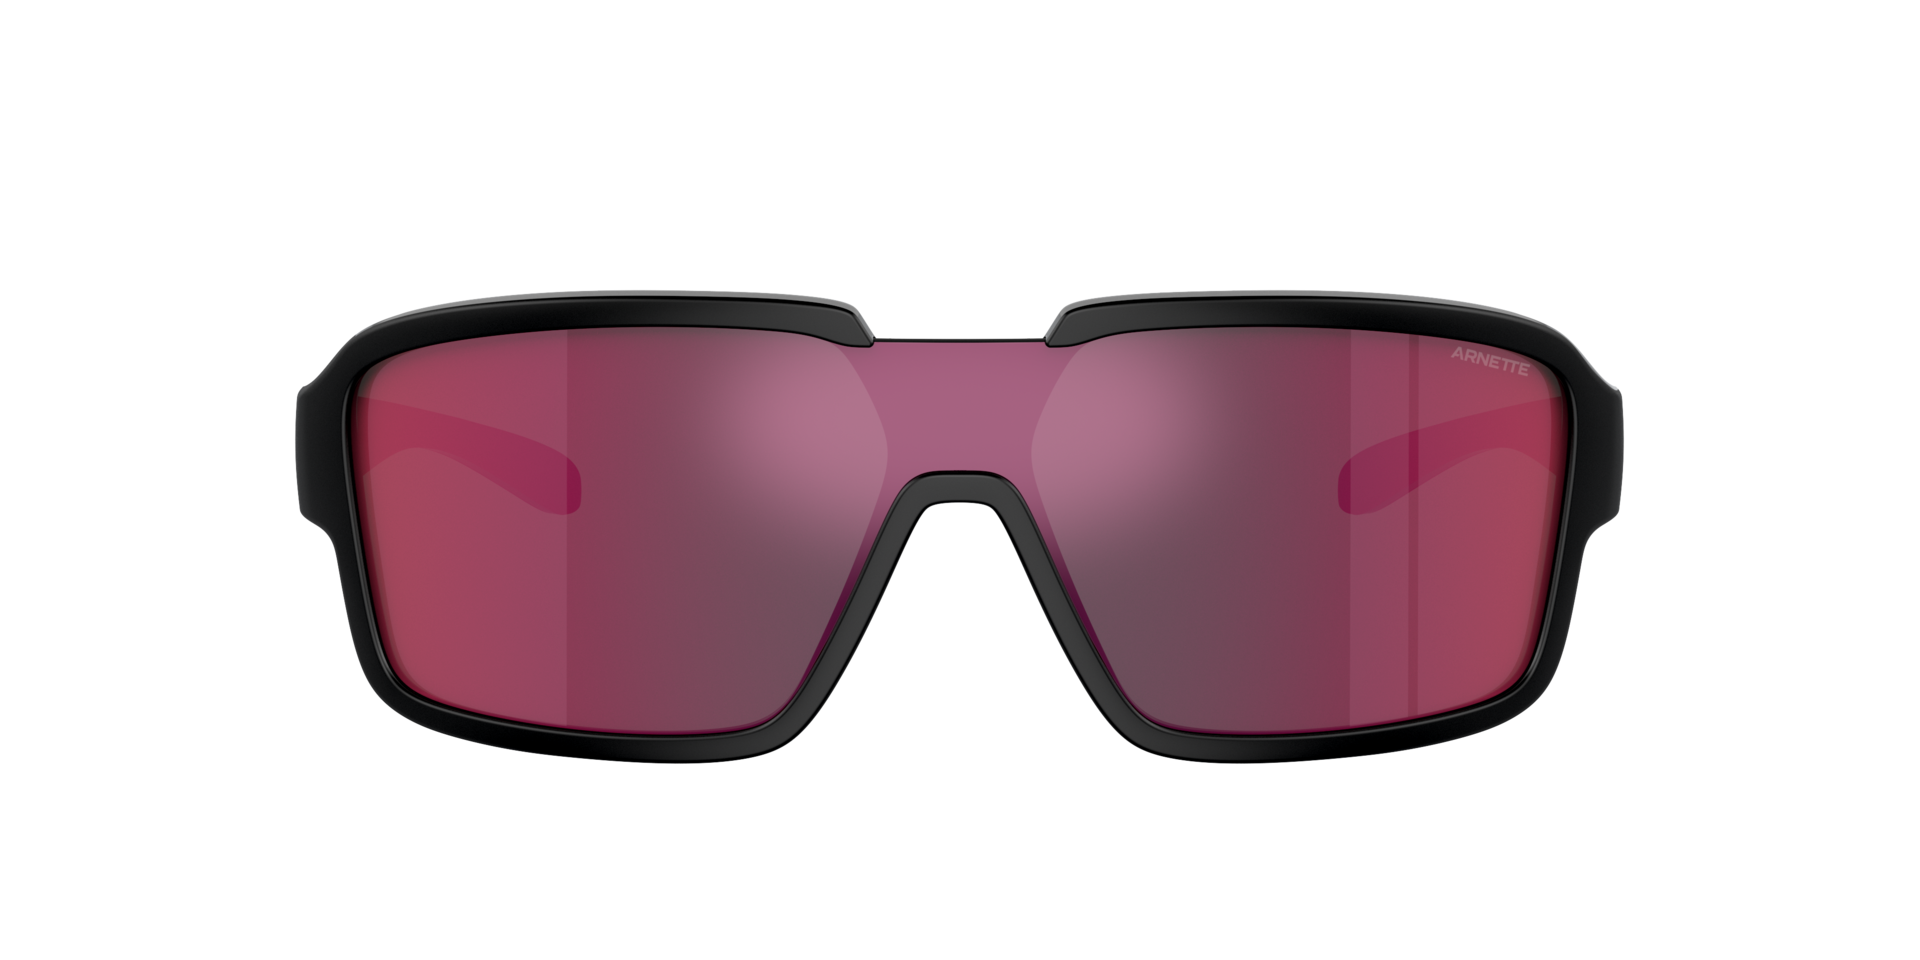 Das Bild zeigt die Sonnenbrille AN4335 27536Q von der Marke Arnette in schwarz/rot.